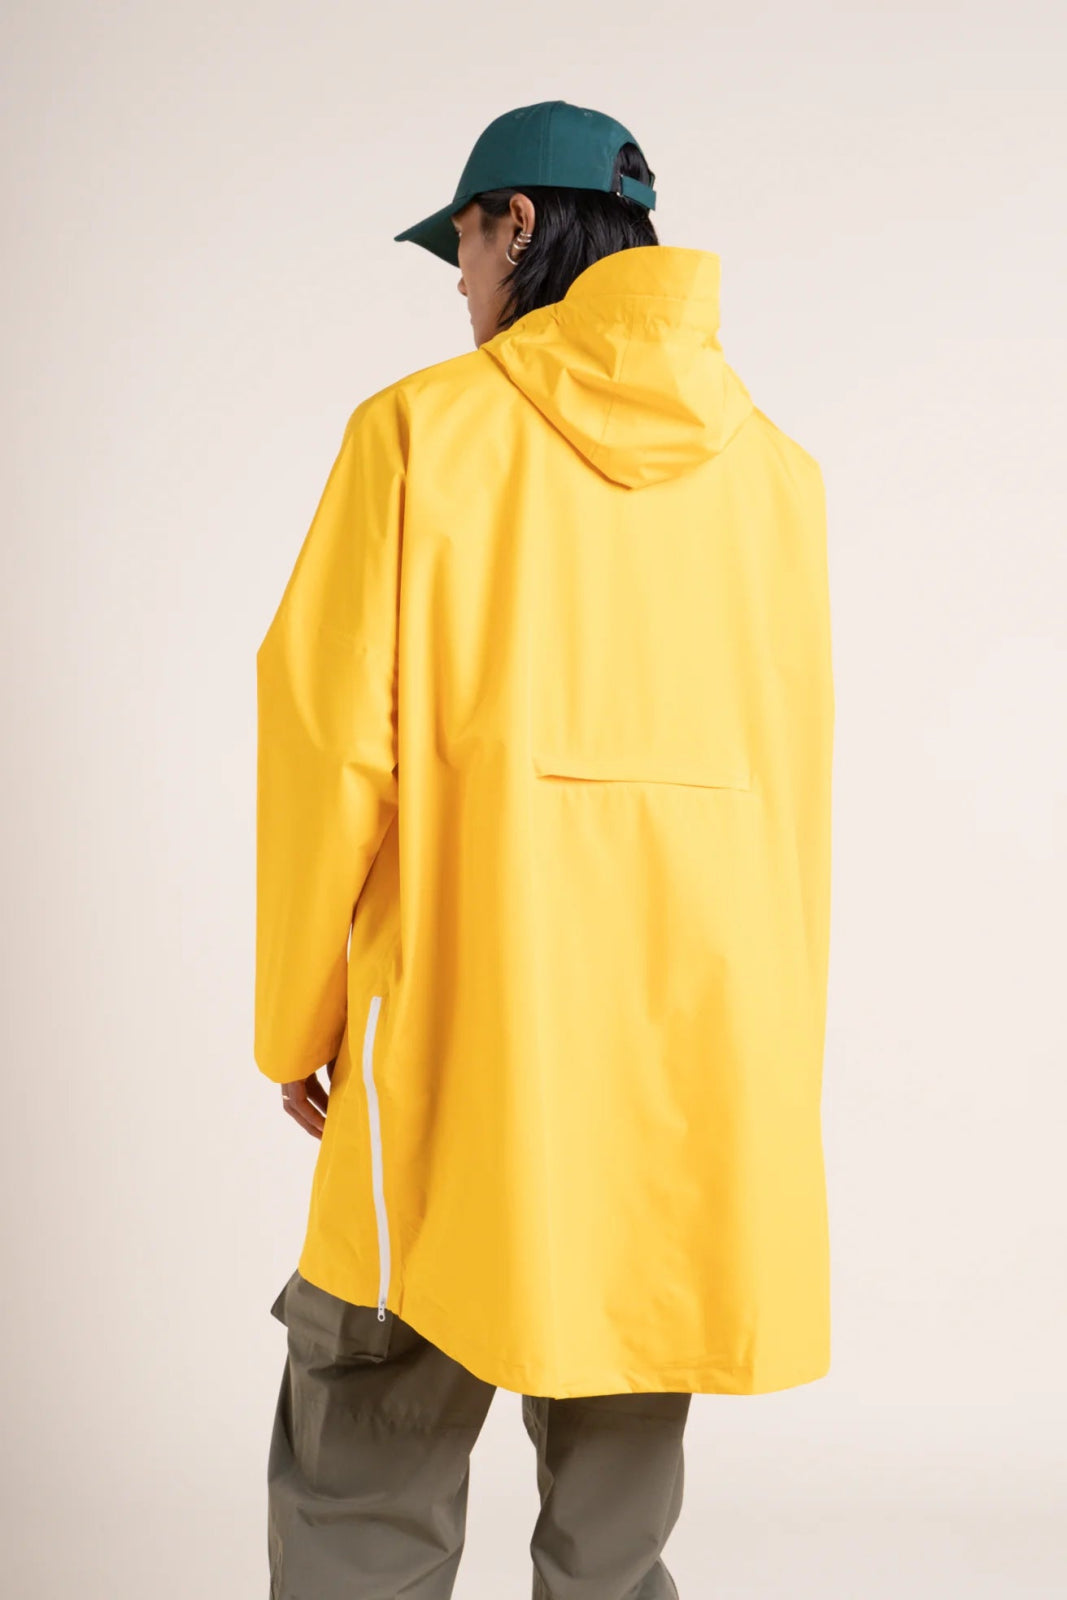 Liberté - Cape de pluie - Veste coupe-vent modulable en sac - Flotte #couleur_citron